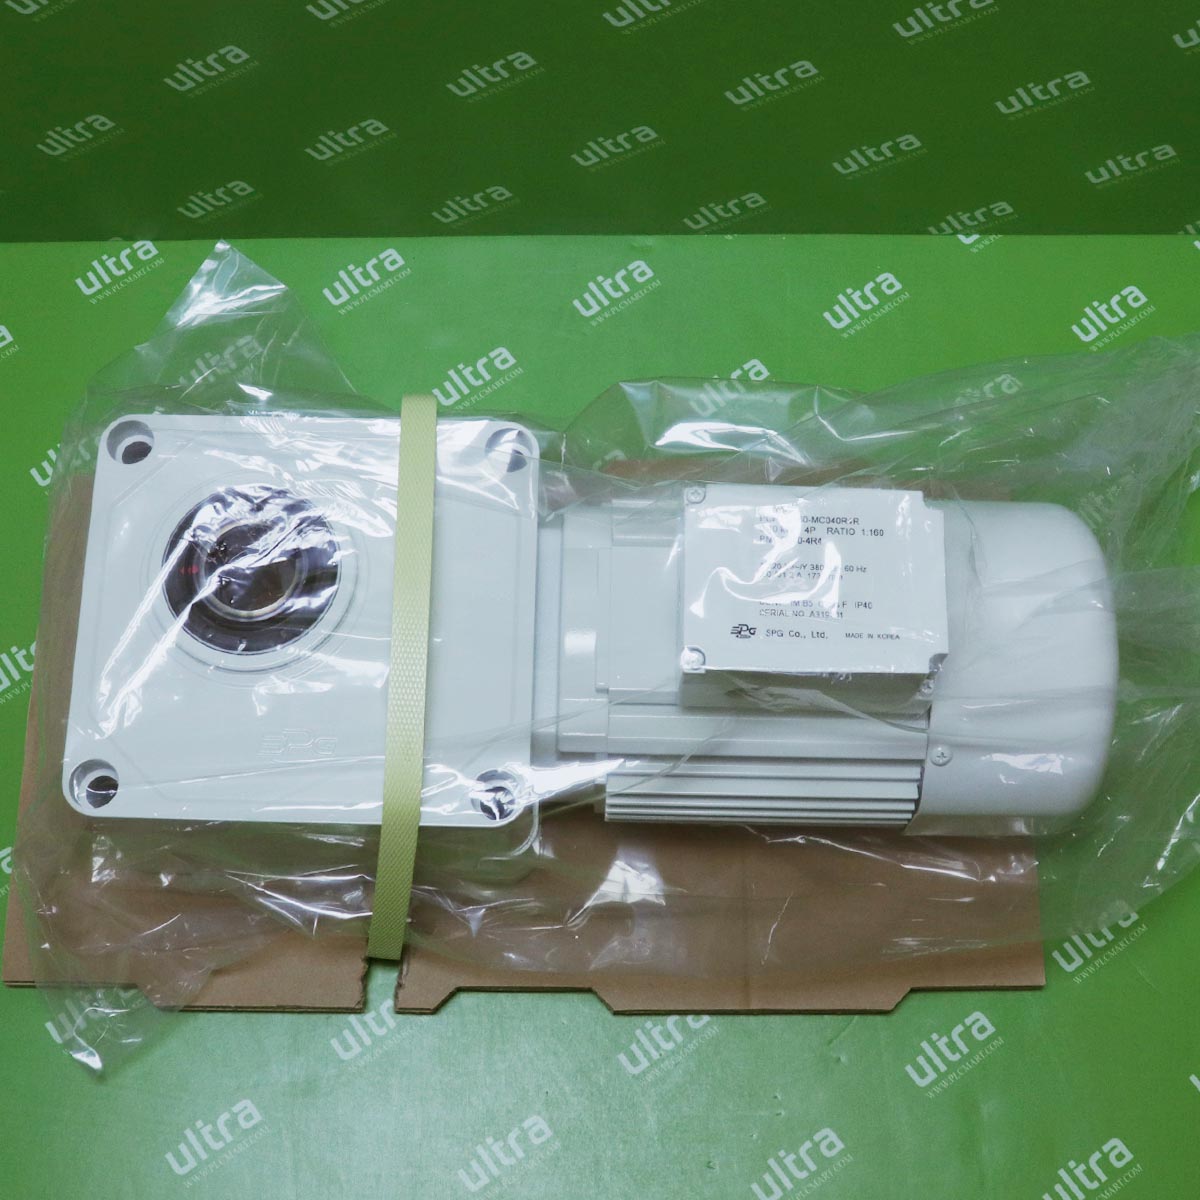 [신품] PCH35-160-MC040R4R SPG (에스피지) 0.4KW 기어드 모터 (납기 : 전화문의)